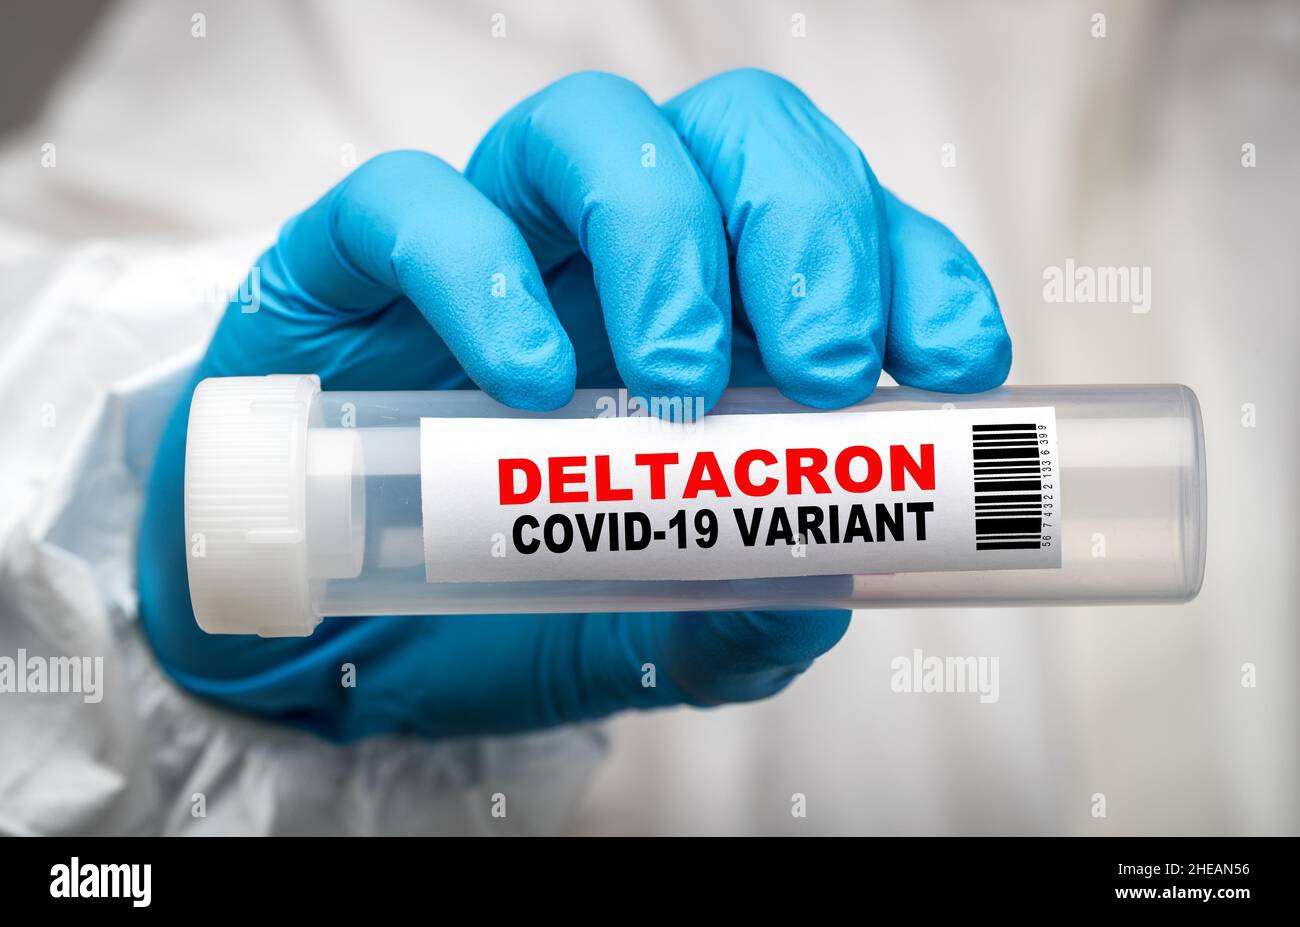 Test en écouvillon avec variante Covid 19 de Deltacron.Deltacron est considéré comme une nouvelle souche de Covid combinant les variantes Omicron et Delta. Banque D'Images